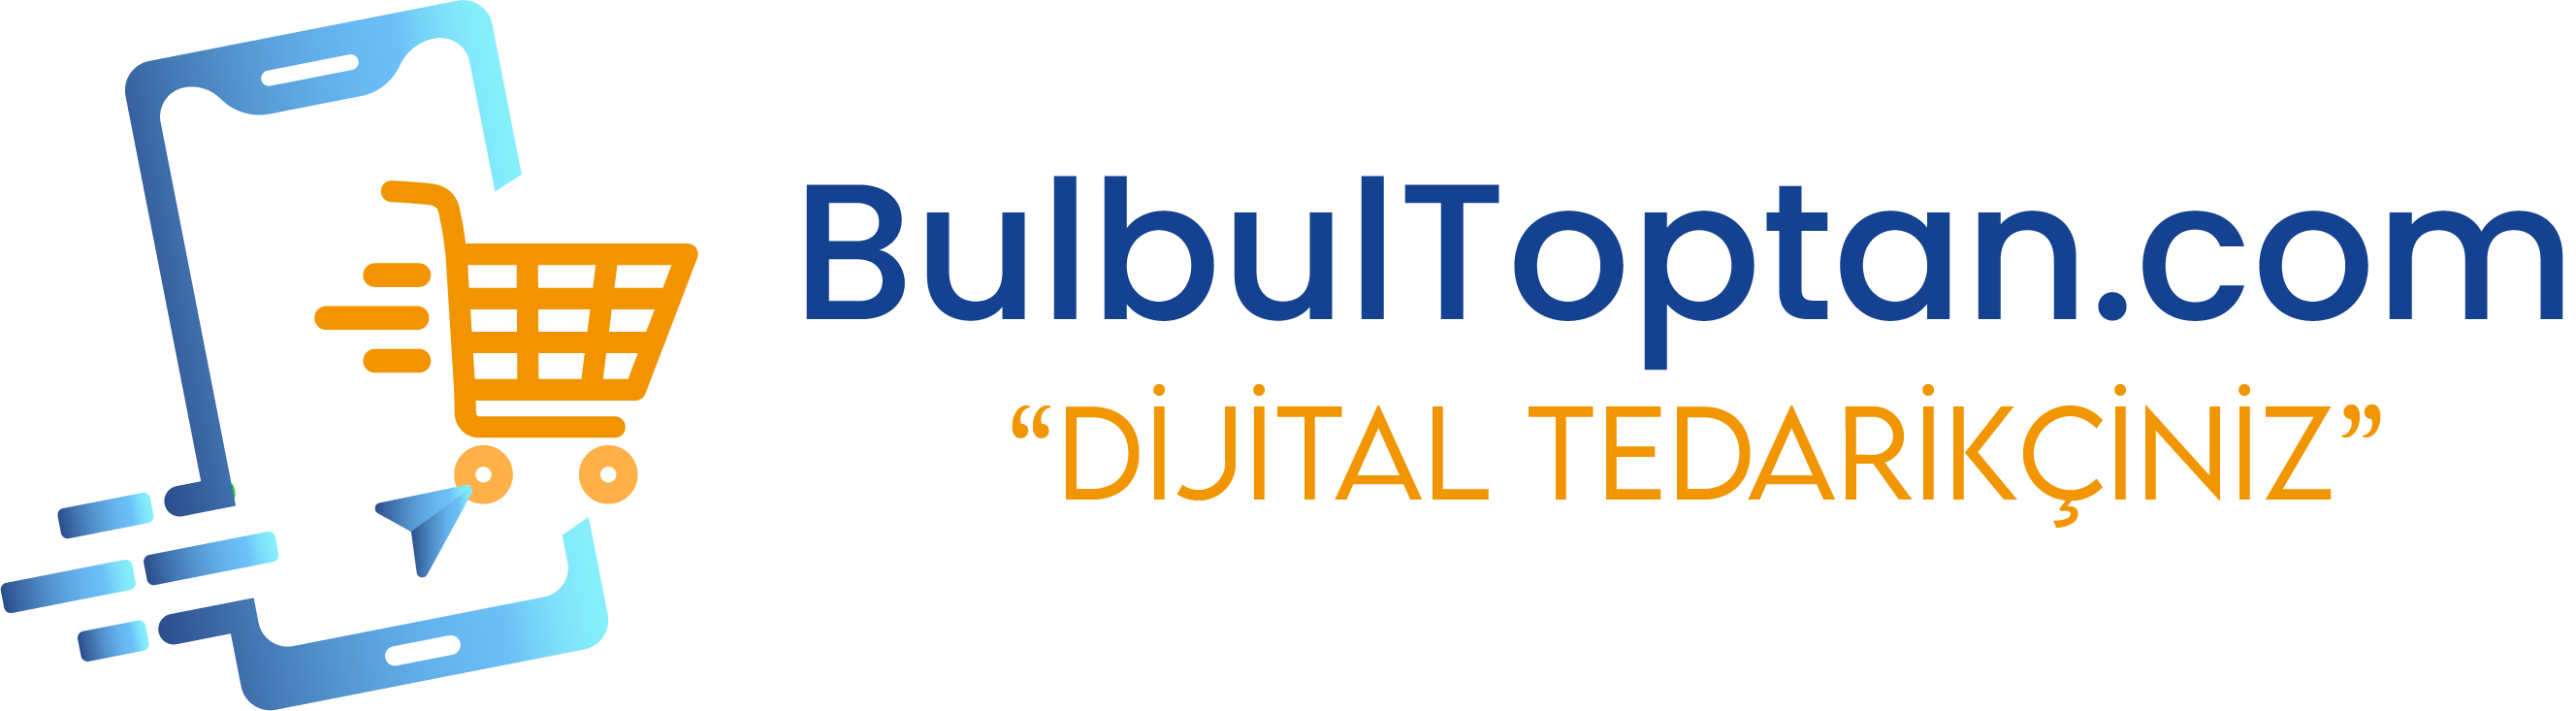 BulbulToptan.com